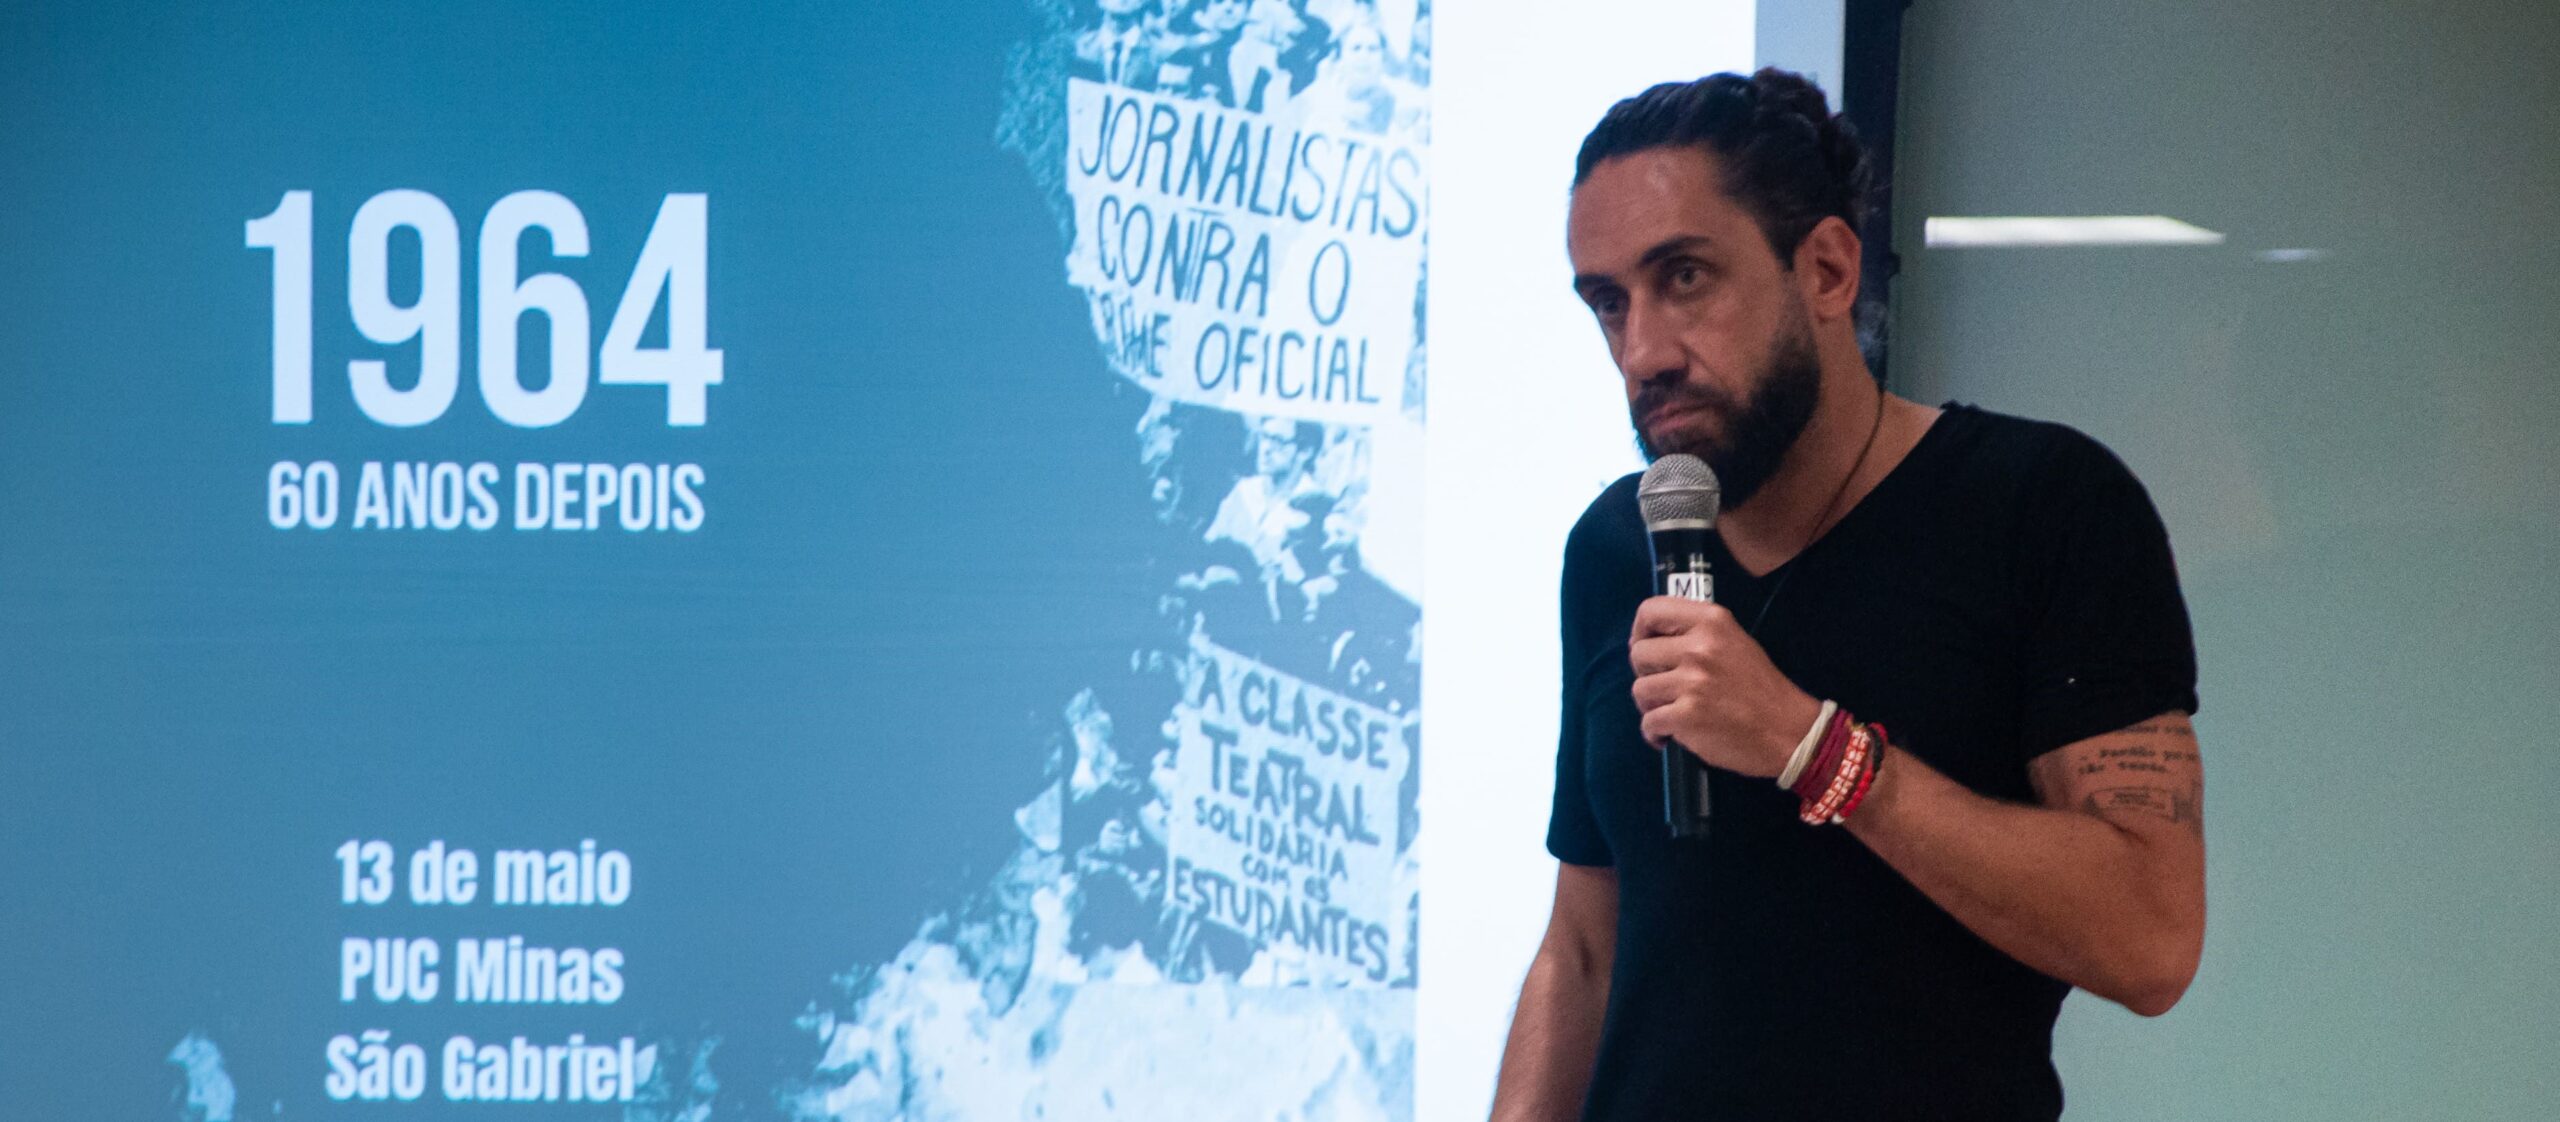 Homem branco usando uma camisa preta com um microfone na mão esquerda, em pé com um fundo com o nome da palestra do JFest